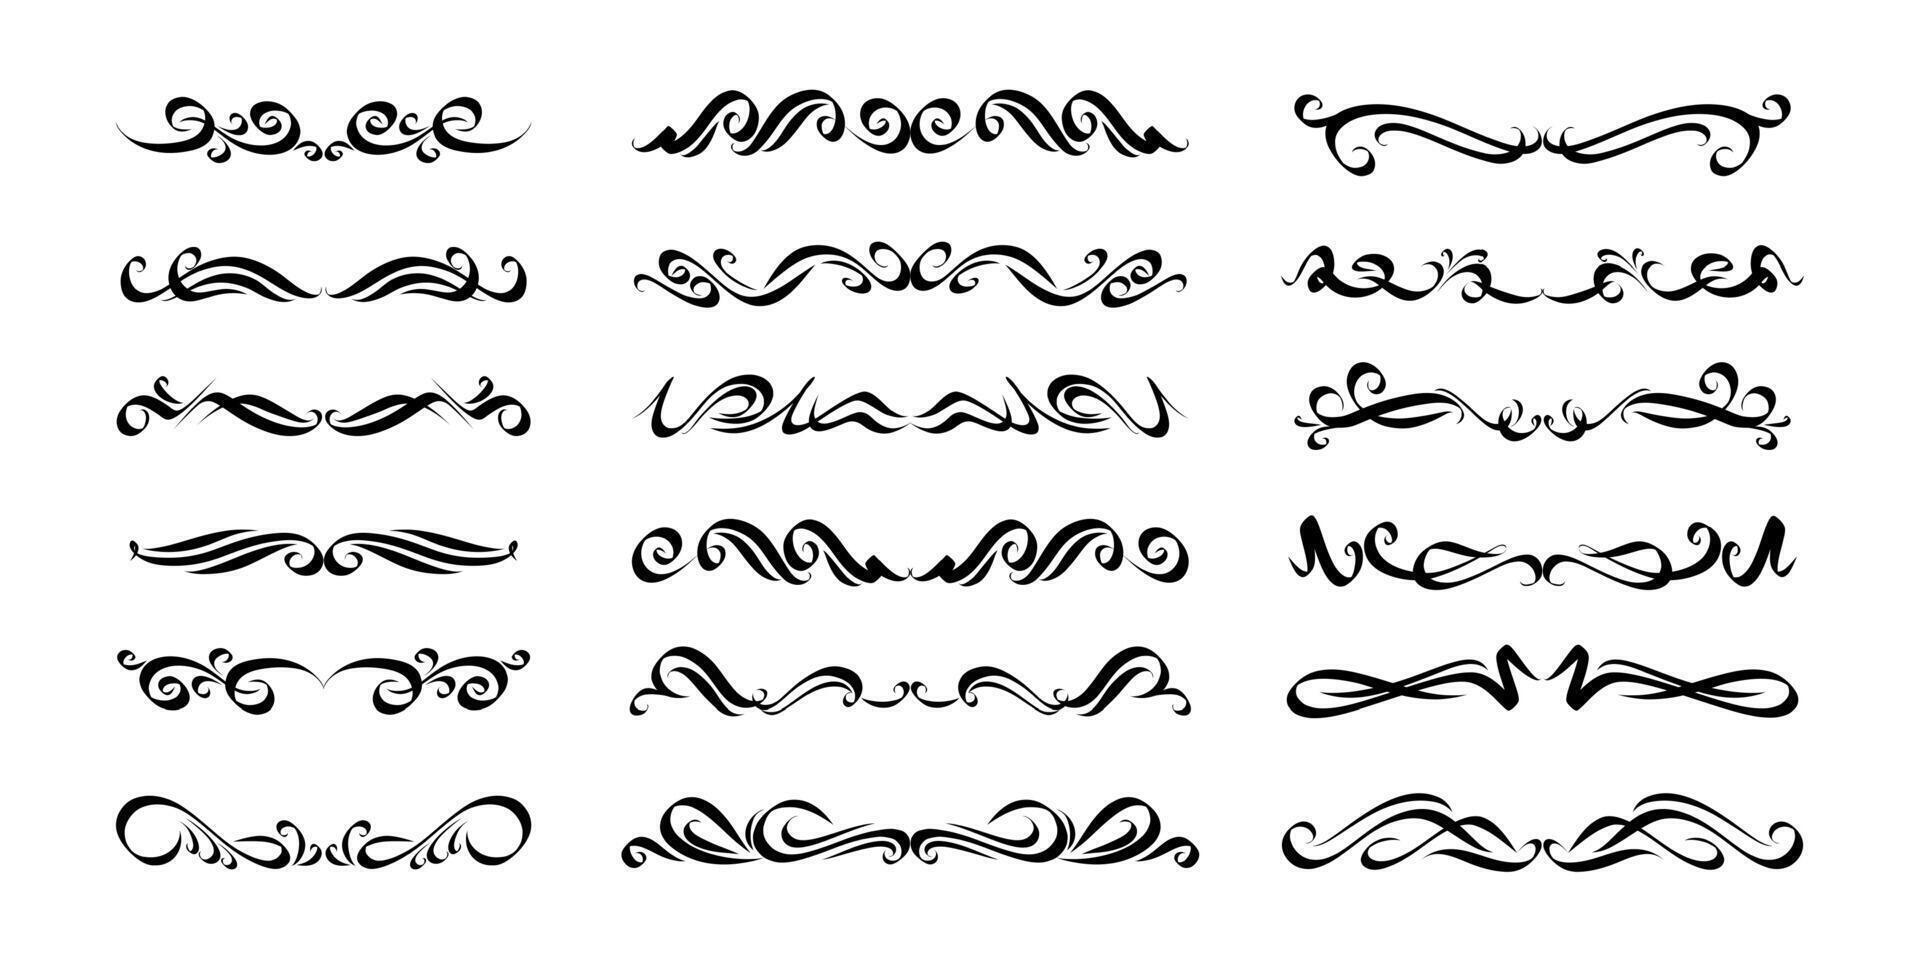 kalligrafische ontwerp elementen zwart en wit, verdelers borders en wervelt. vector